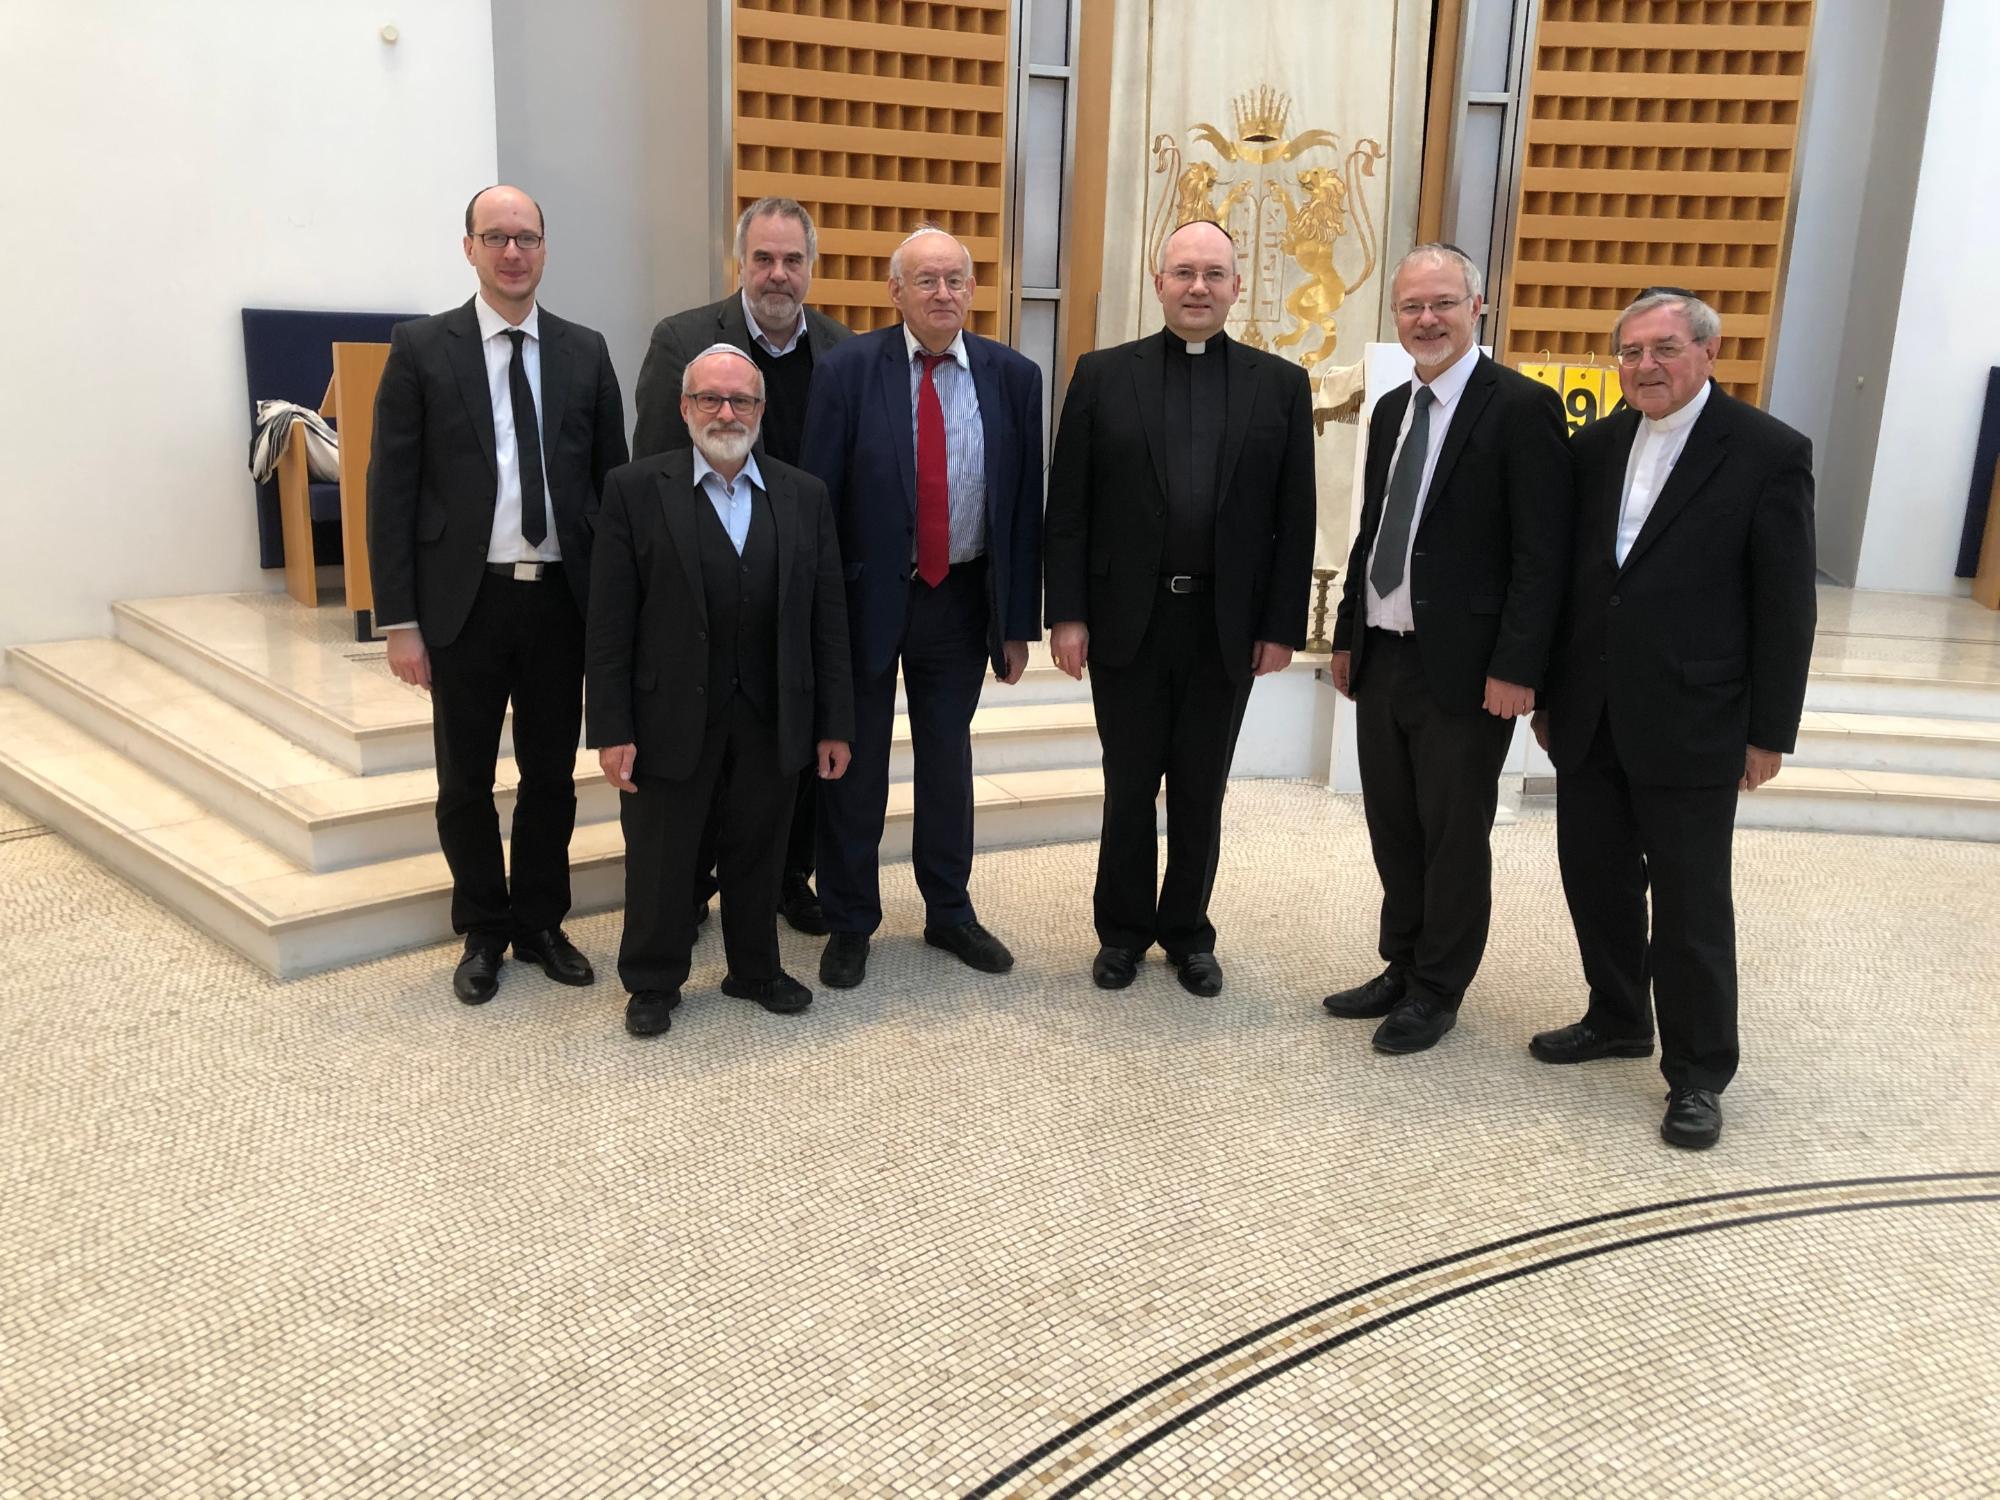 Bischof Dr. Helmut Dieser hat heute zusammen mit dem emeritierten Bischof Dr. Heinrich Mussinghoff und Dompropst Rolf-Peter Cremer als Zeichen der Solidarität die Aachener Synagoge besucht.